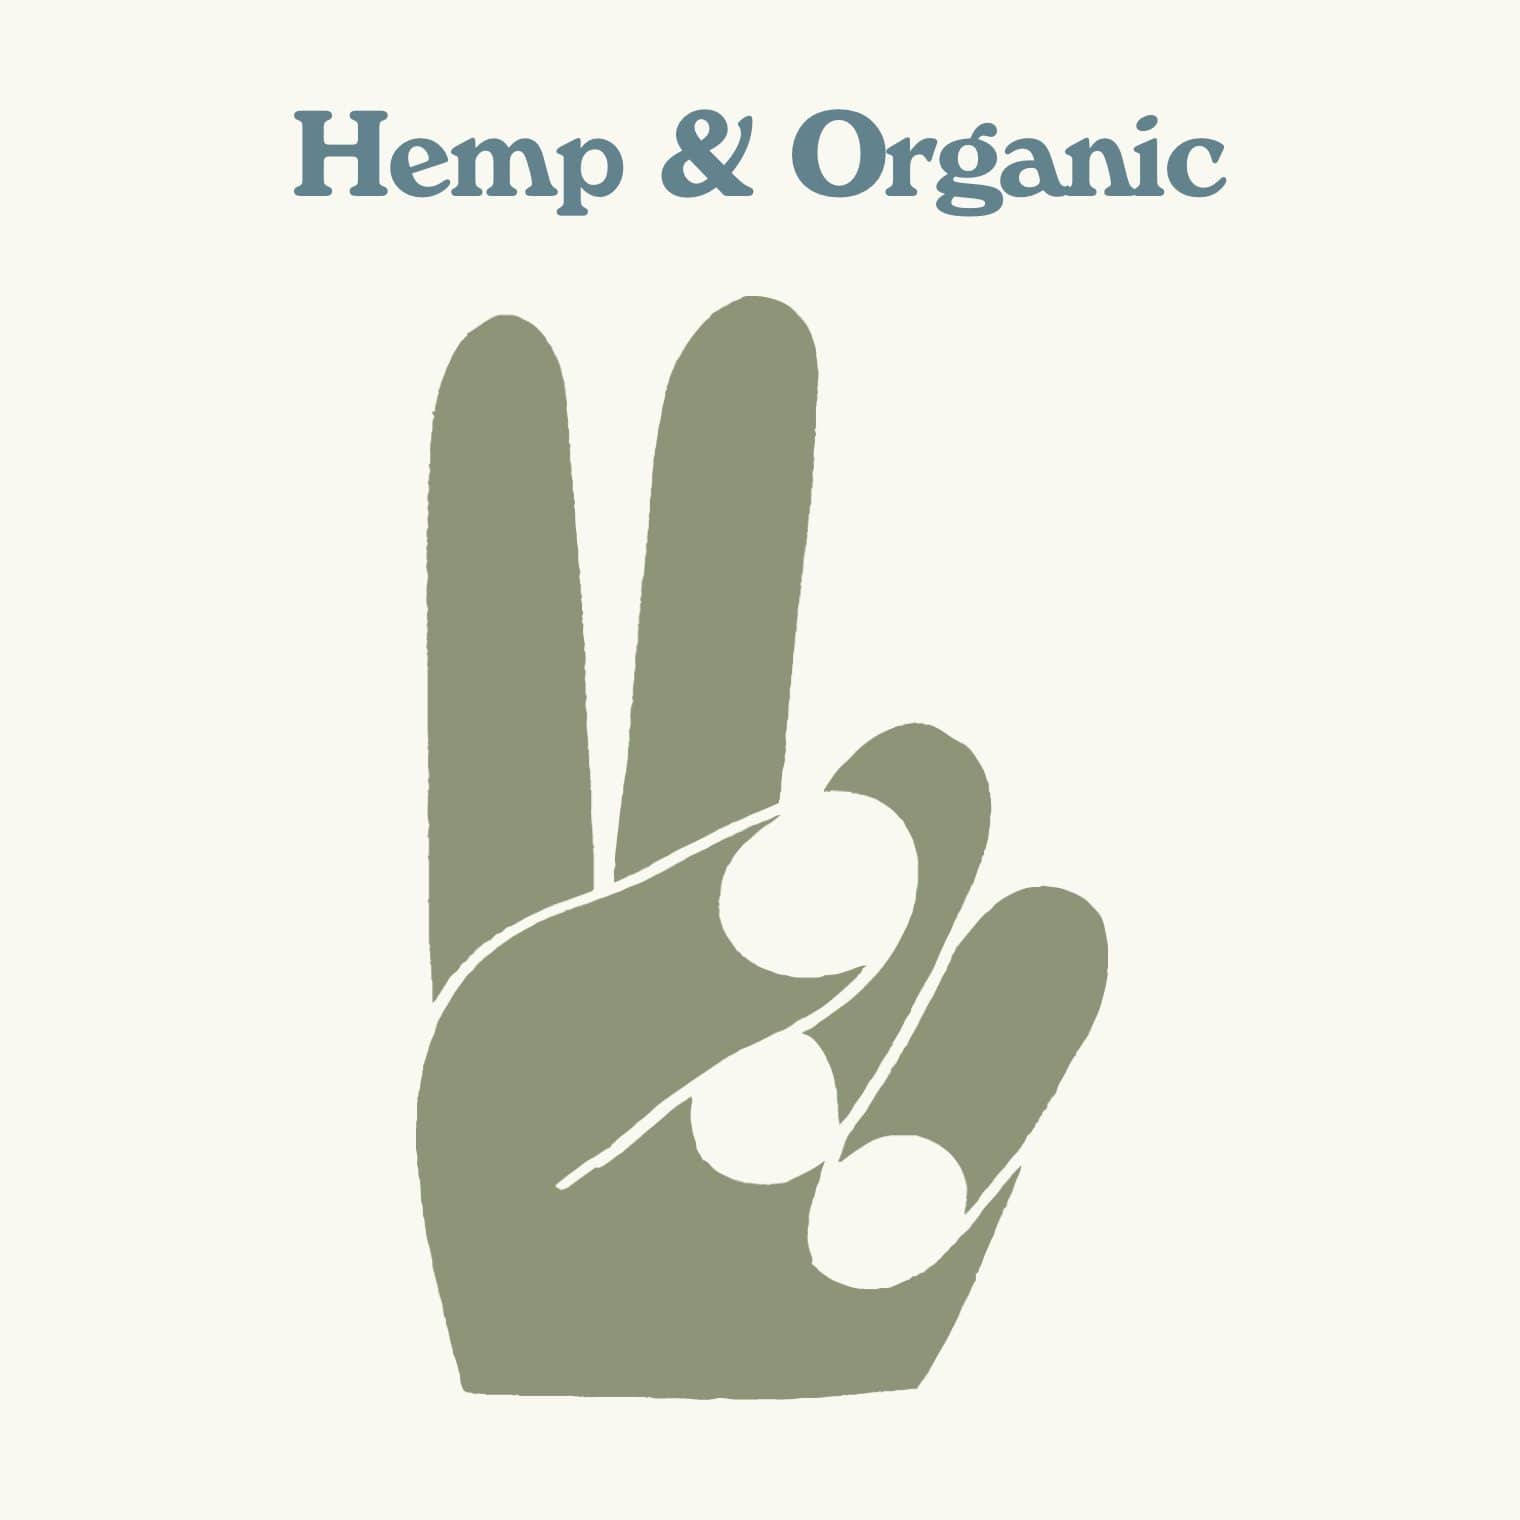 Hemp & Organic